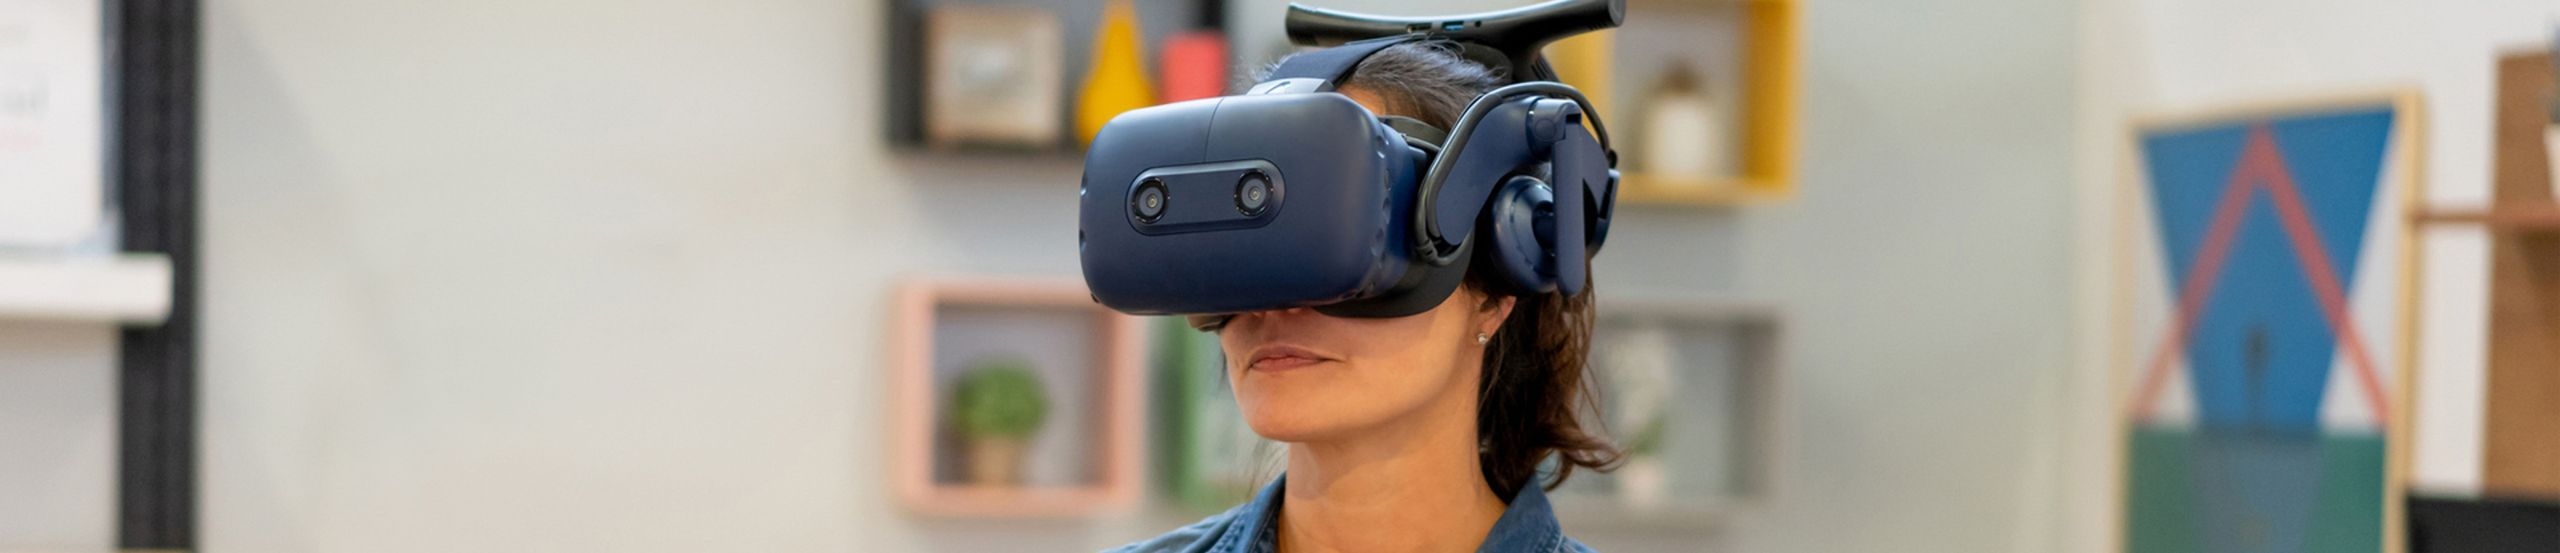 Eine Frau trägt eine VR-Brille und hält einen VR-Controller in der Hand